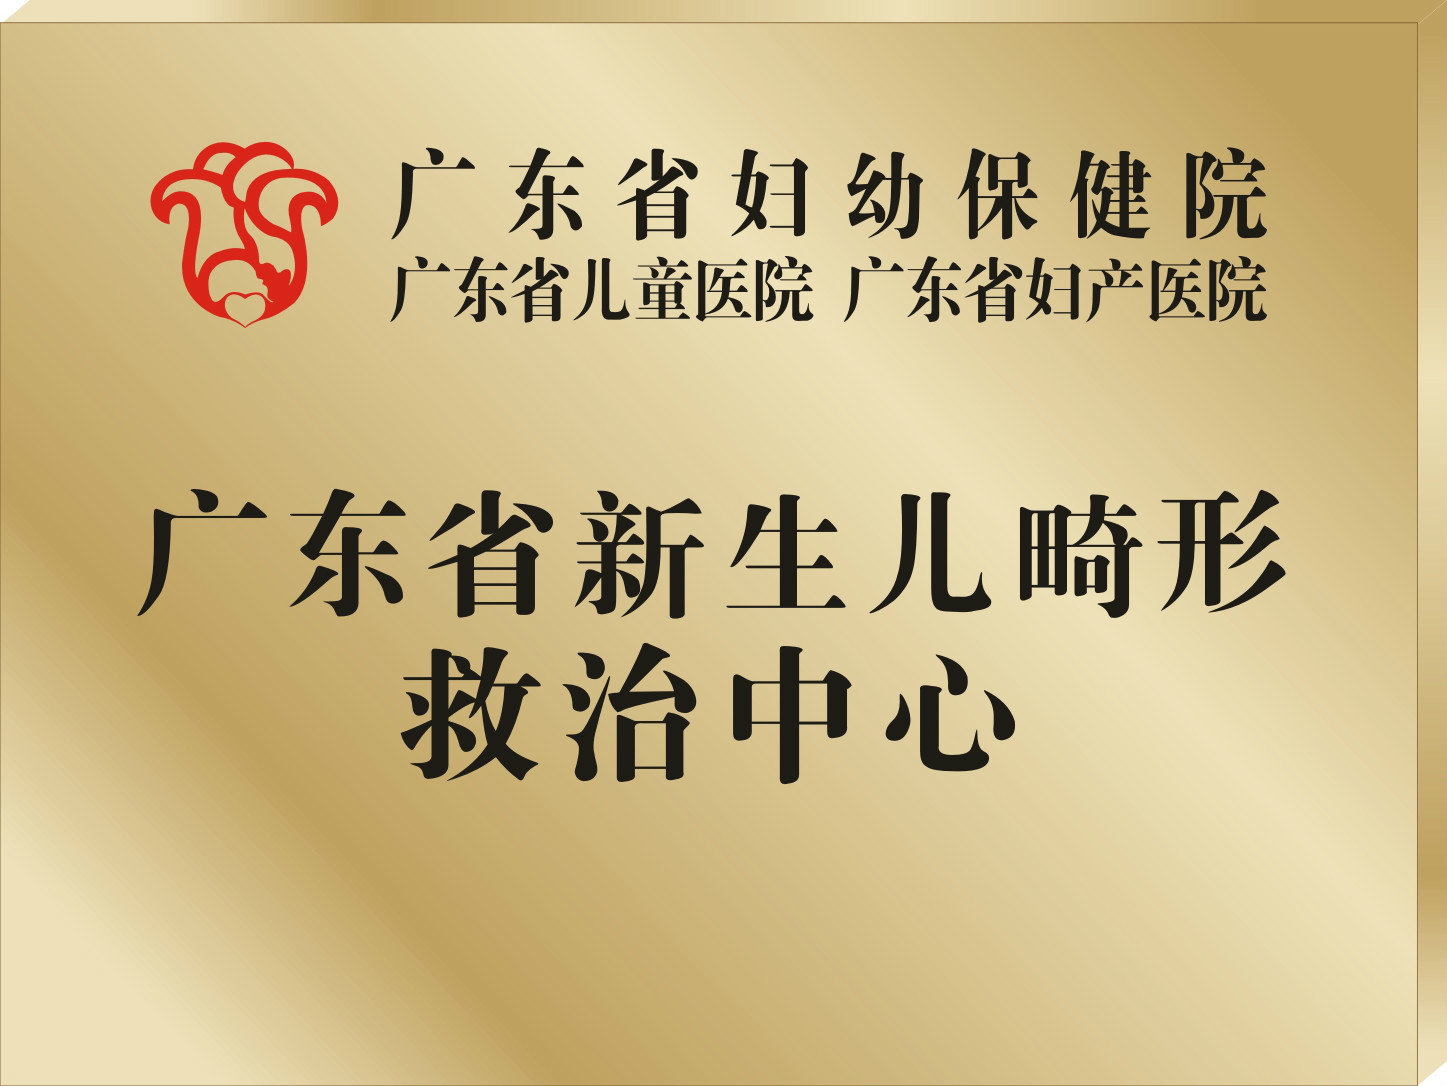 广东省妇幼保健院logo图片